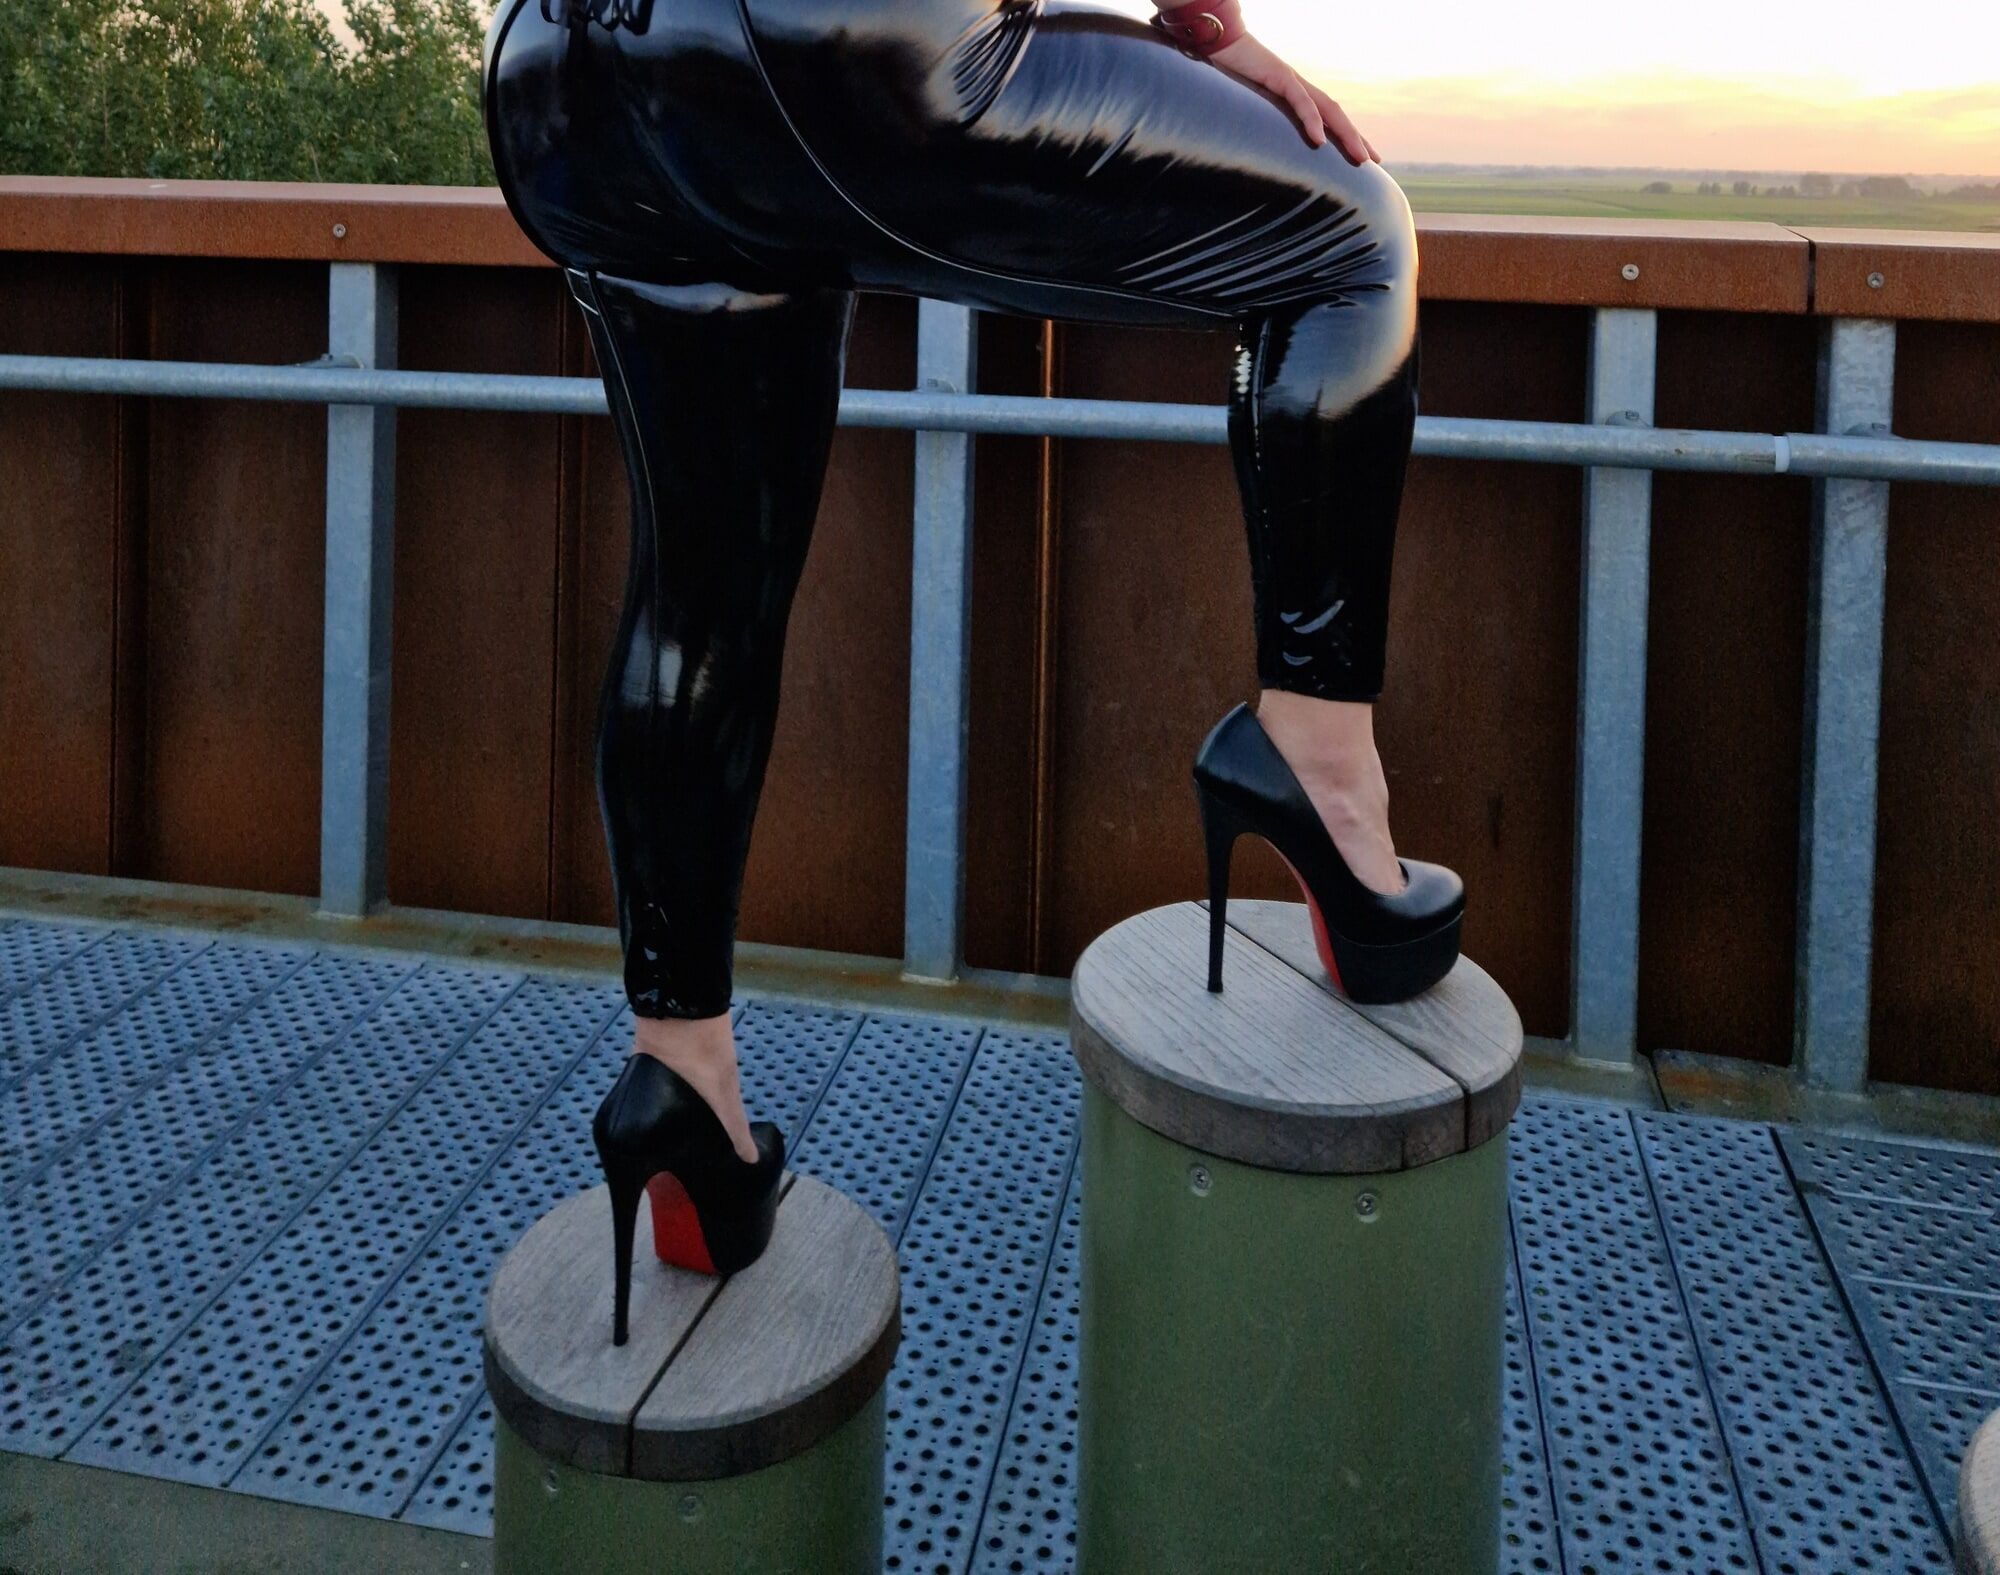 MissBigButt visits an overlook wearing her shiny dress #6